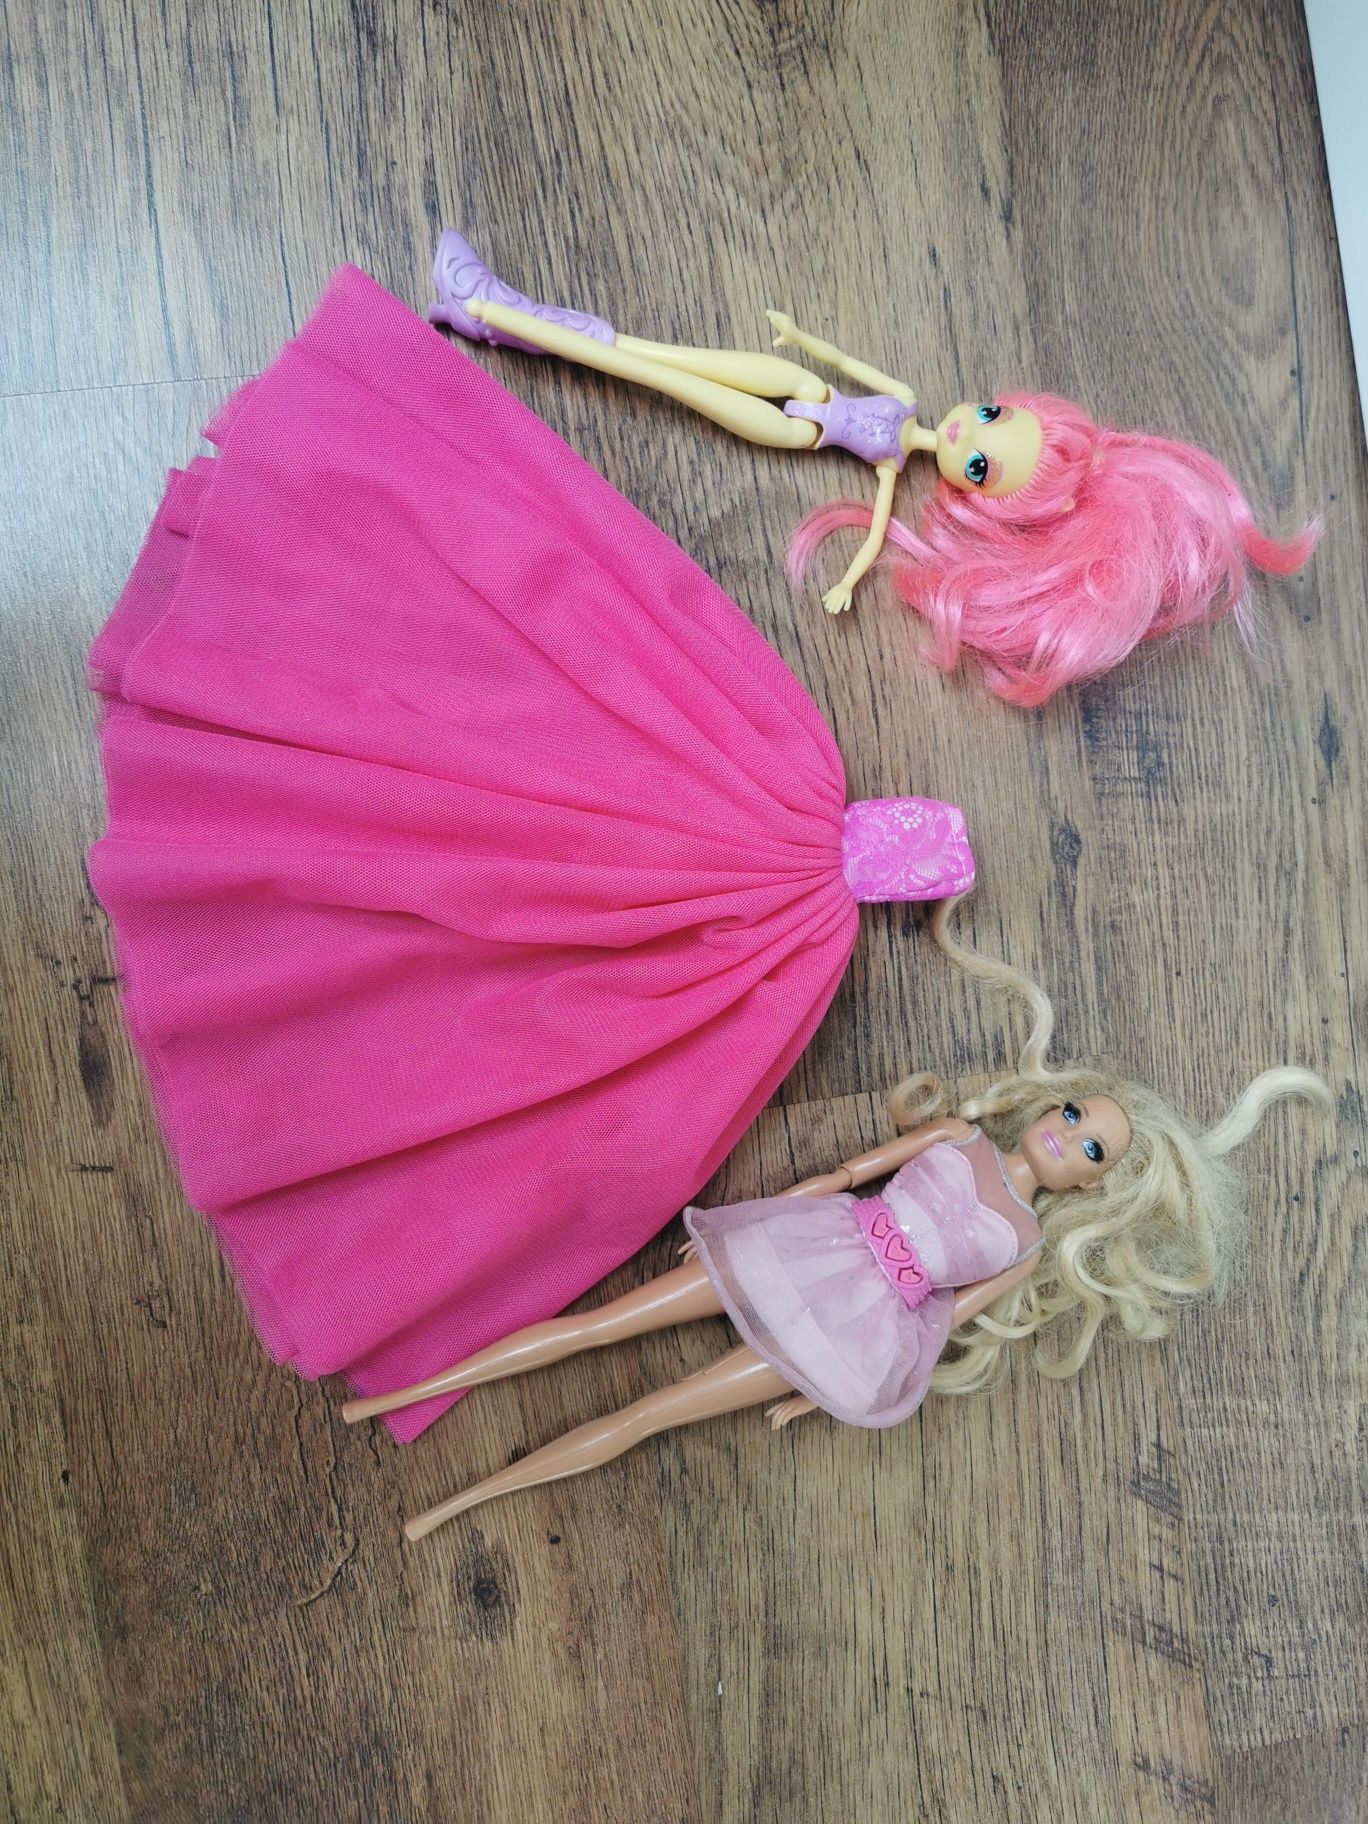 Auta Barbie, myjnia, lalki, akcesoria